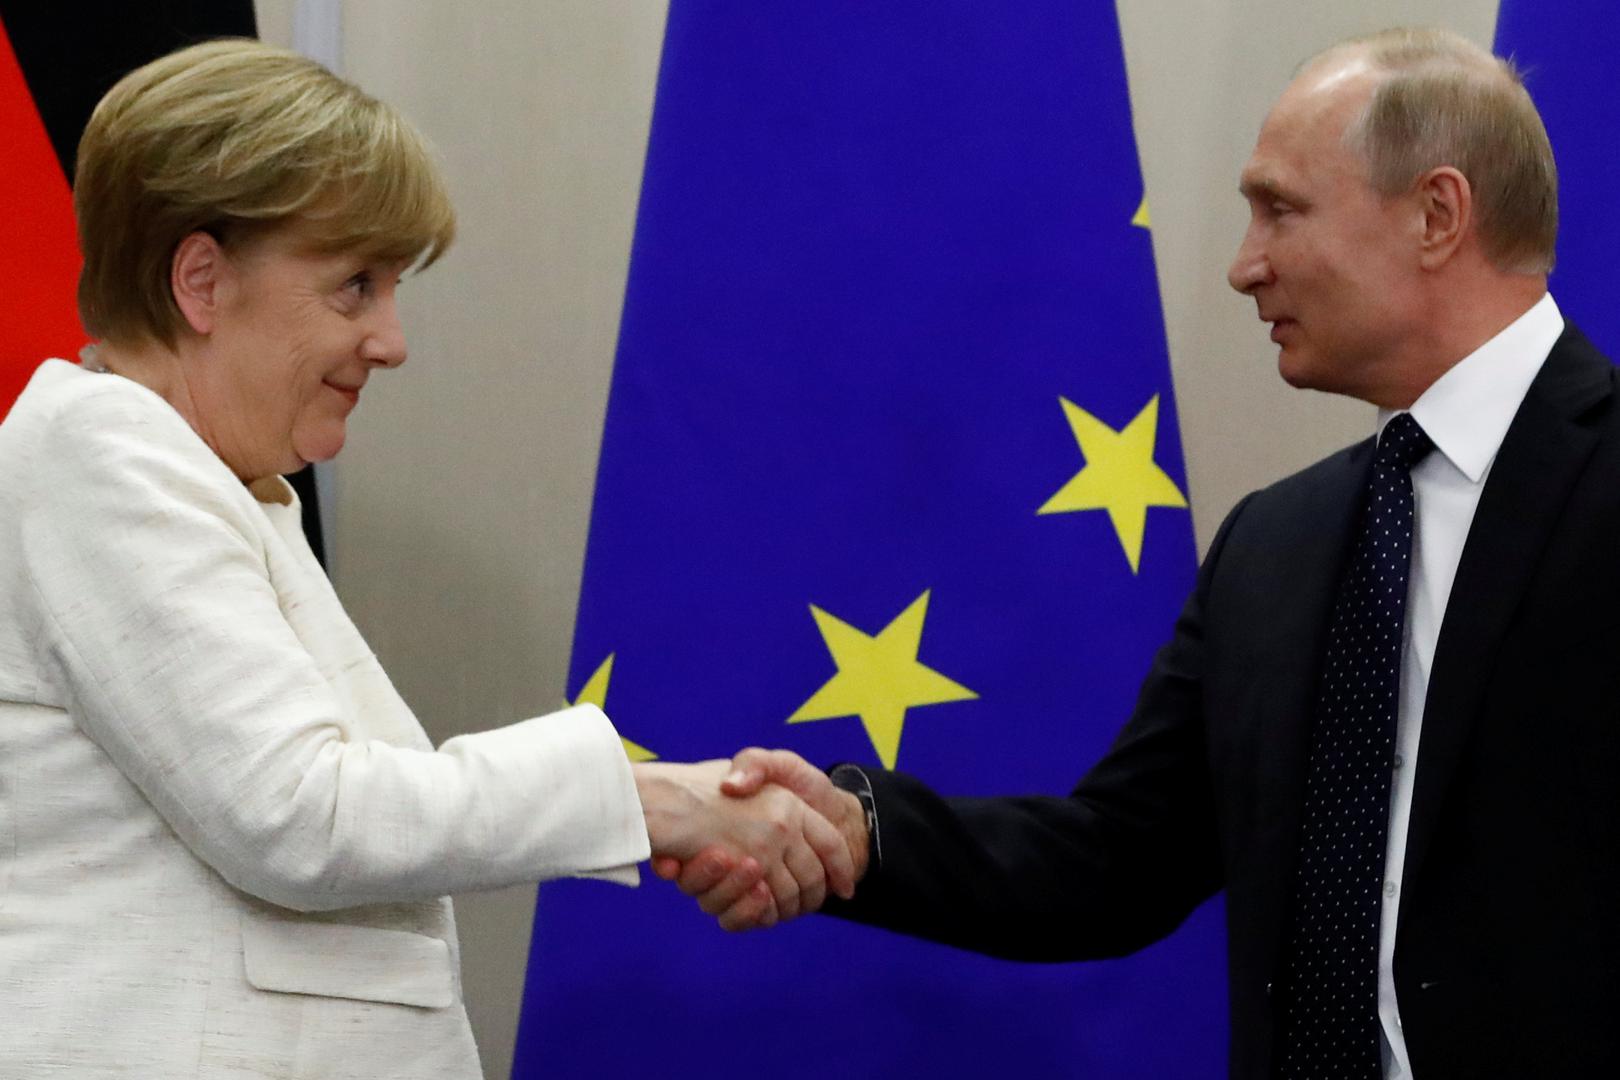 Rusija i Njemačka
Merkel i Putin poboljšali su odnose i zbog trgovine plinom